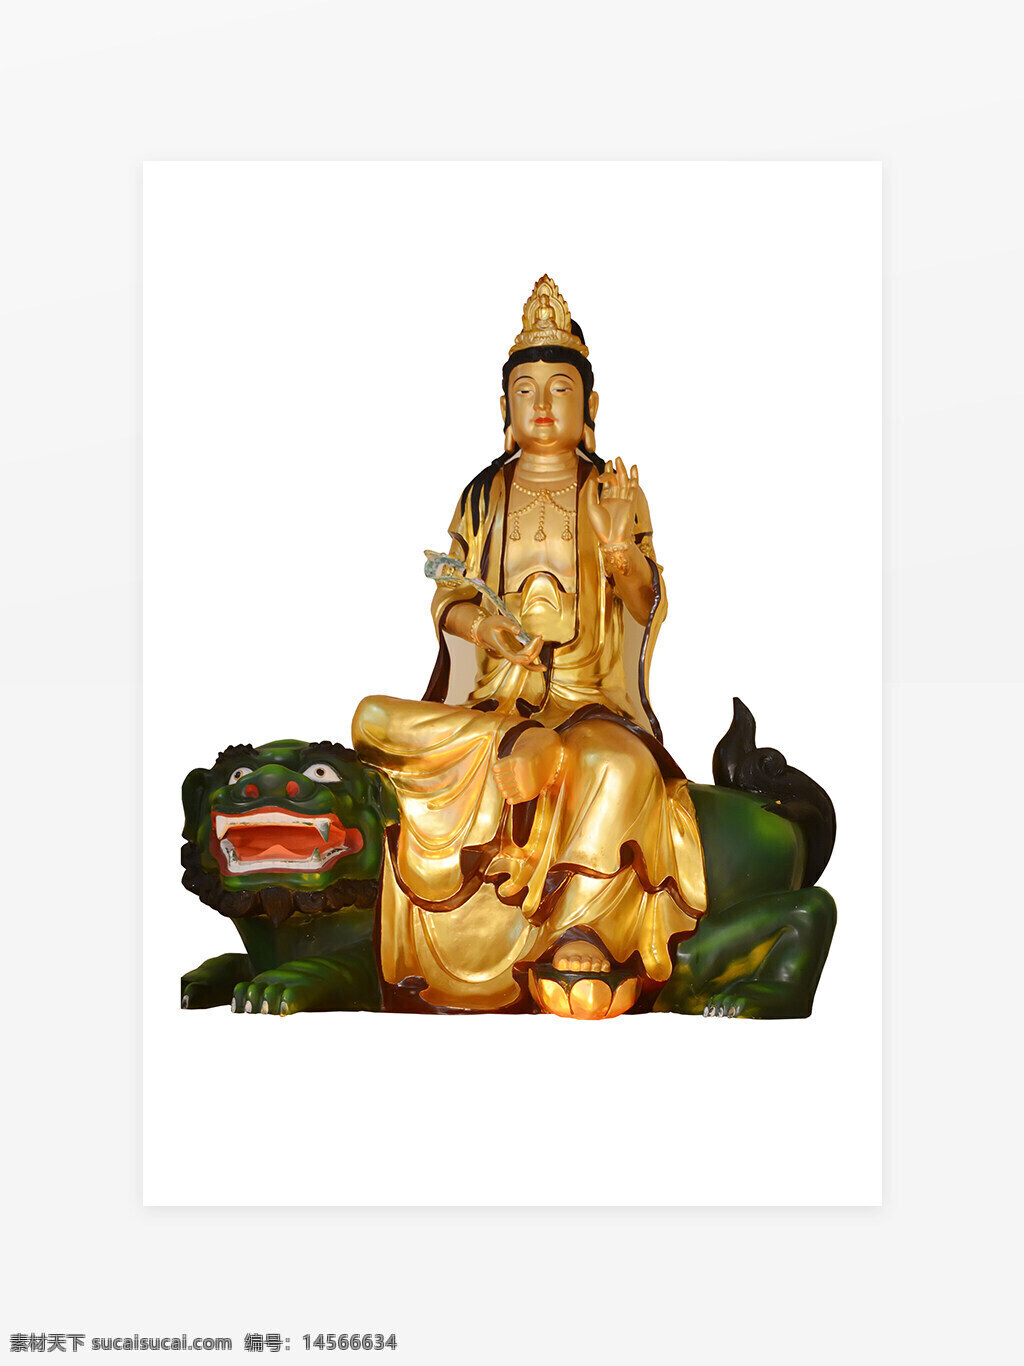 佛教人物元素 背景墙 菩萨 立体佛像 佛教 宗教 神话人物 宗教文化 佛教文化 座骑